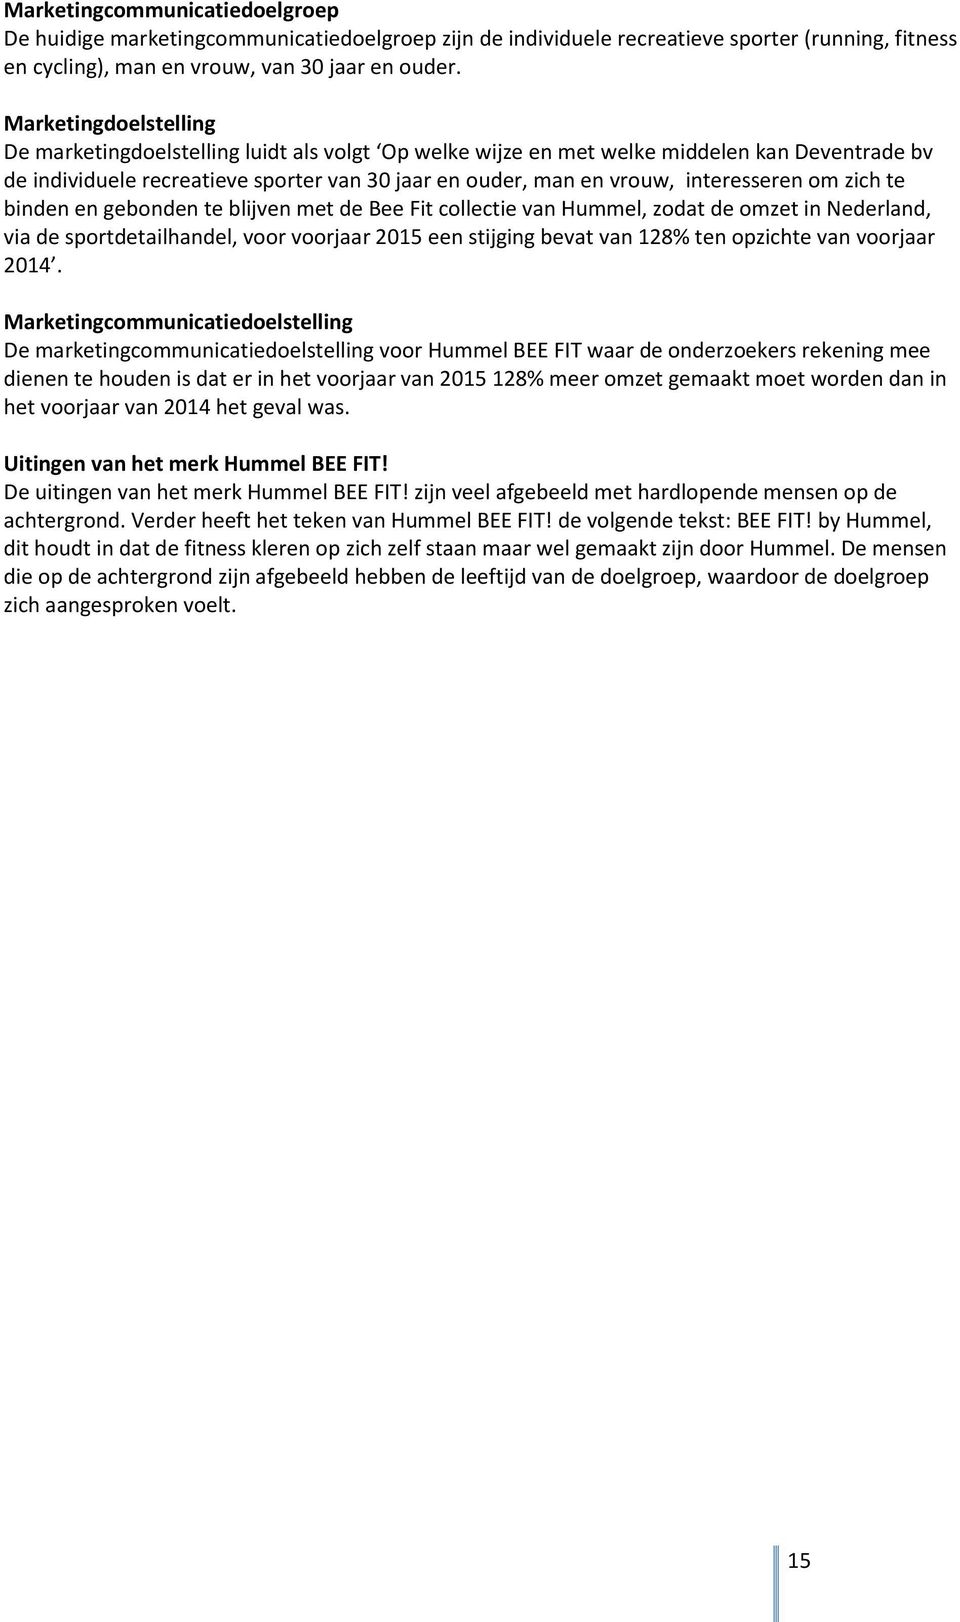 interesseren om zich te binden en gebonden te blijven met de Bee Fit collectie van Hummel, zodat de omzet in Nederland, via de sportdetailhandel, voor voorjaar 2015 een stijging bevat van 128% ten